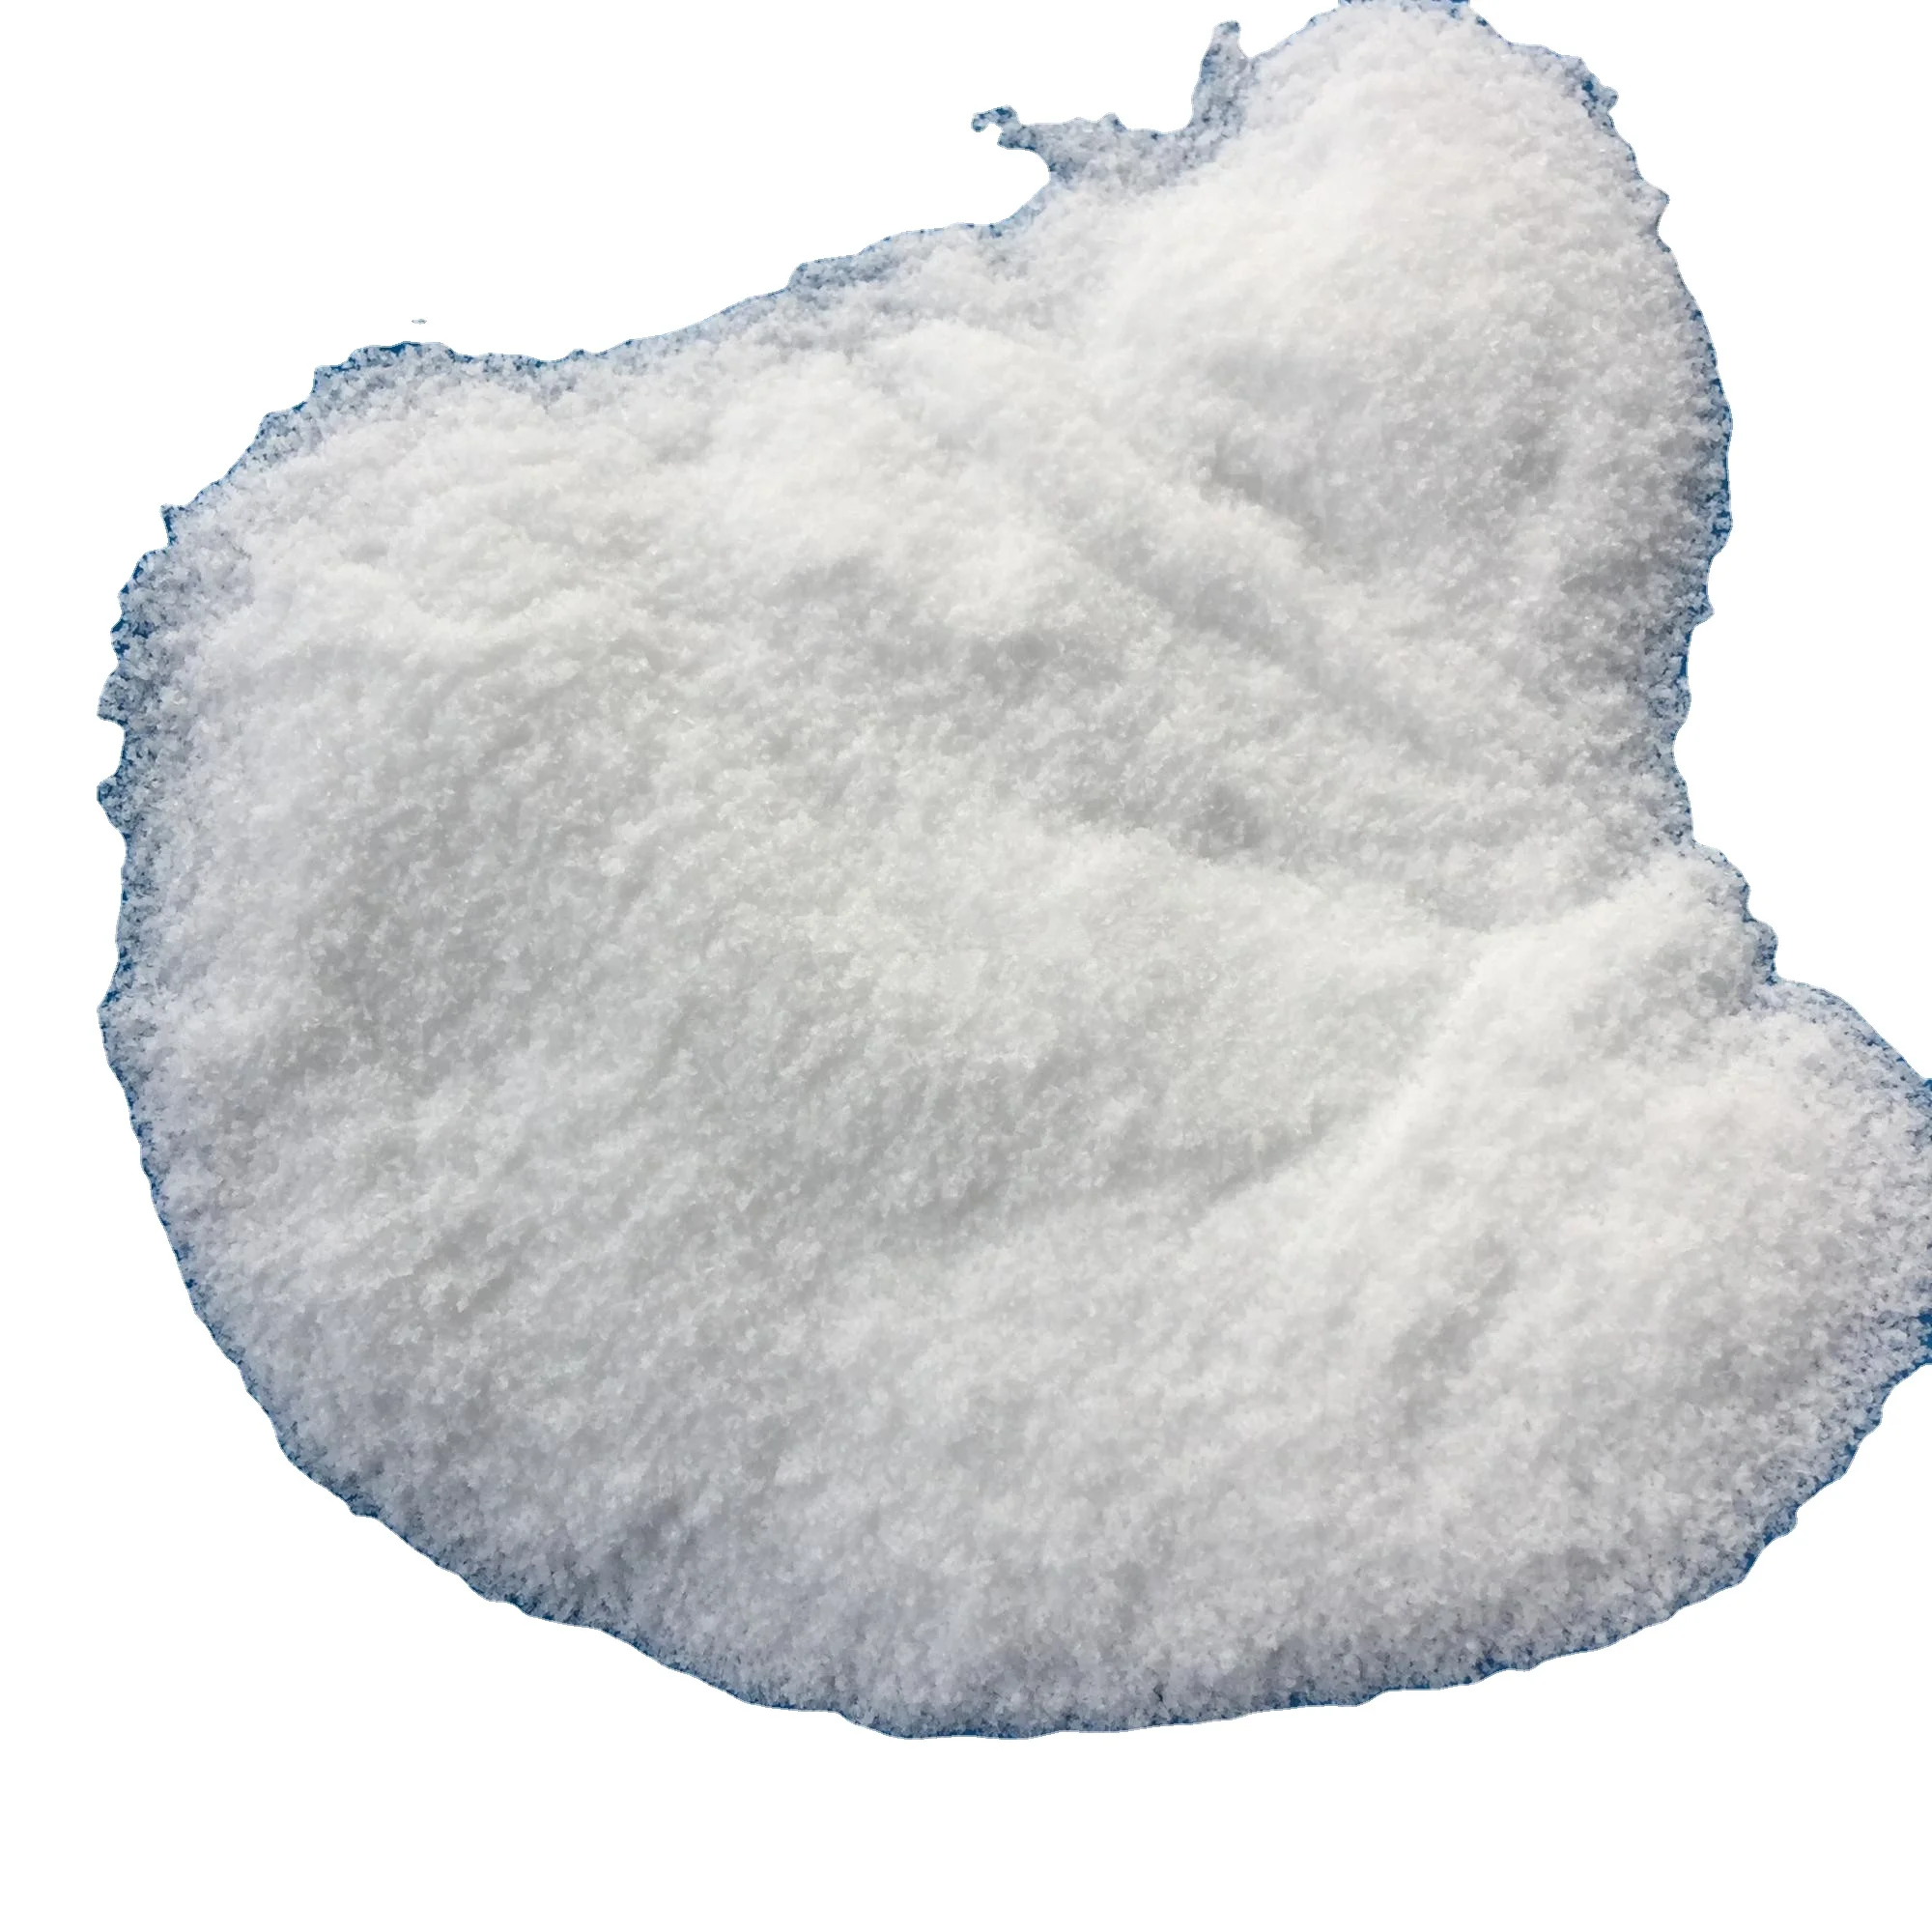 White Powder 99.5%Min Polivinyl Alcohol/PVA (CAS: 9002-89-5) for Agriculture Grade